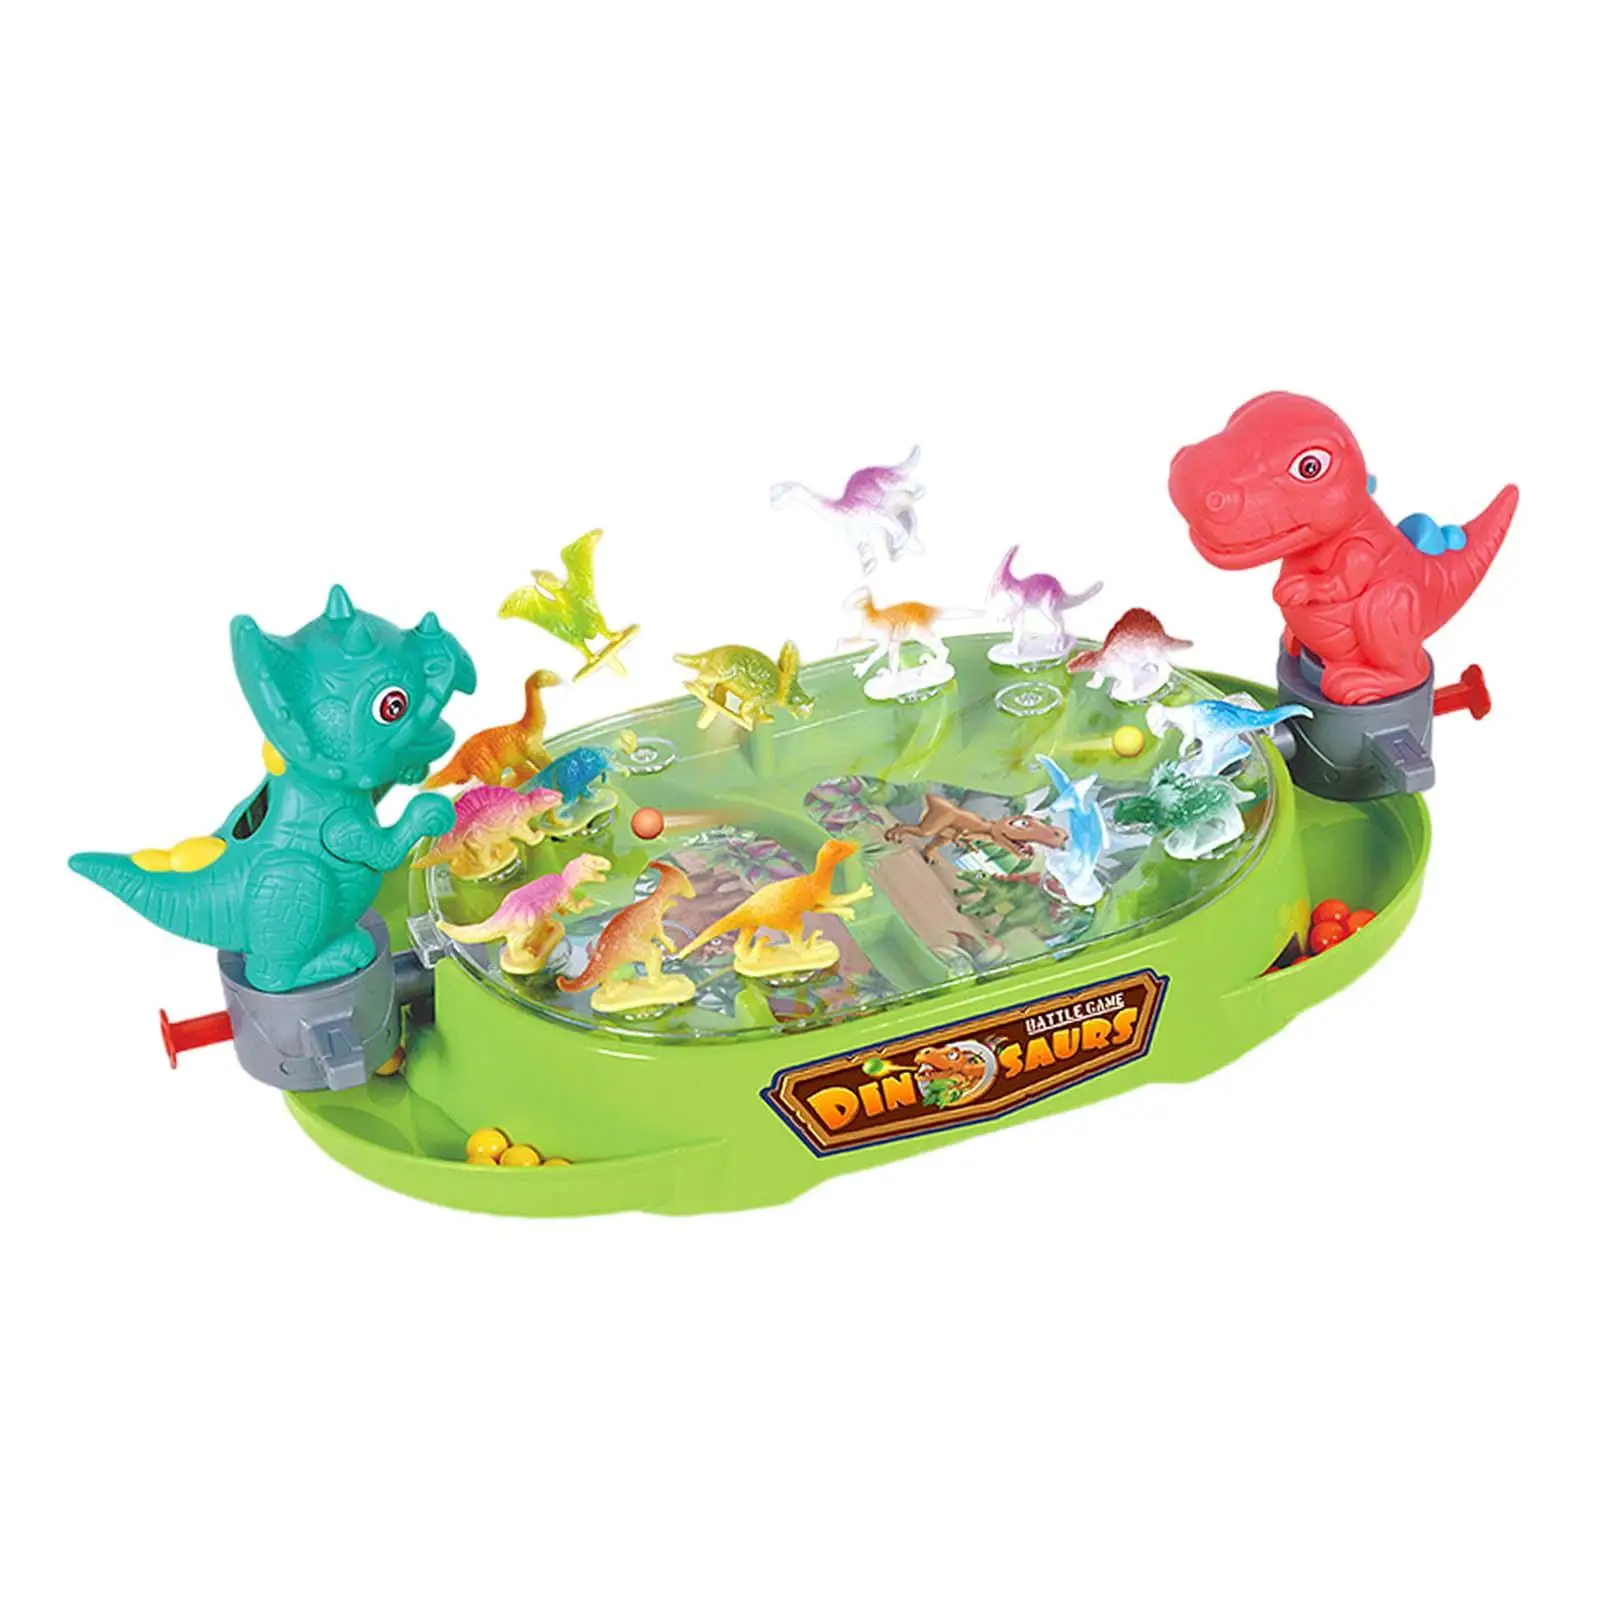 Боевая настольная игра Динозавр Настольная игра для взрослых и детей Мальчиков и детей